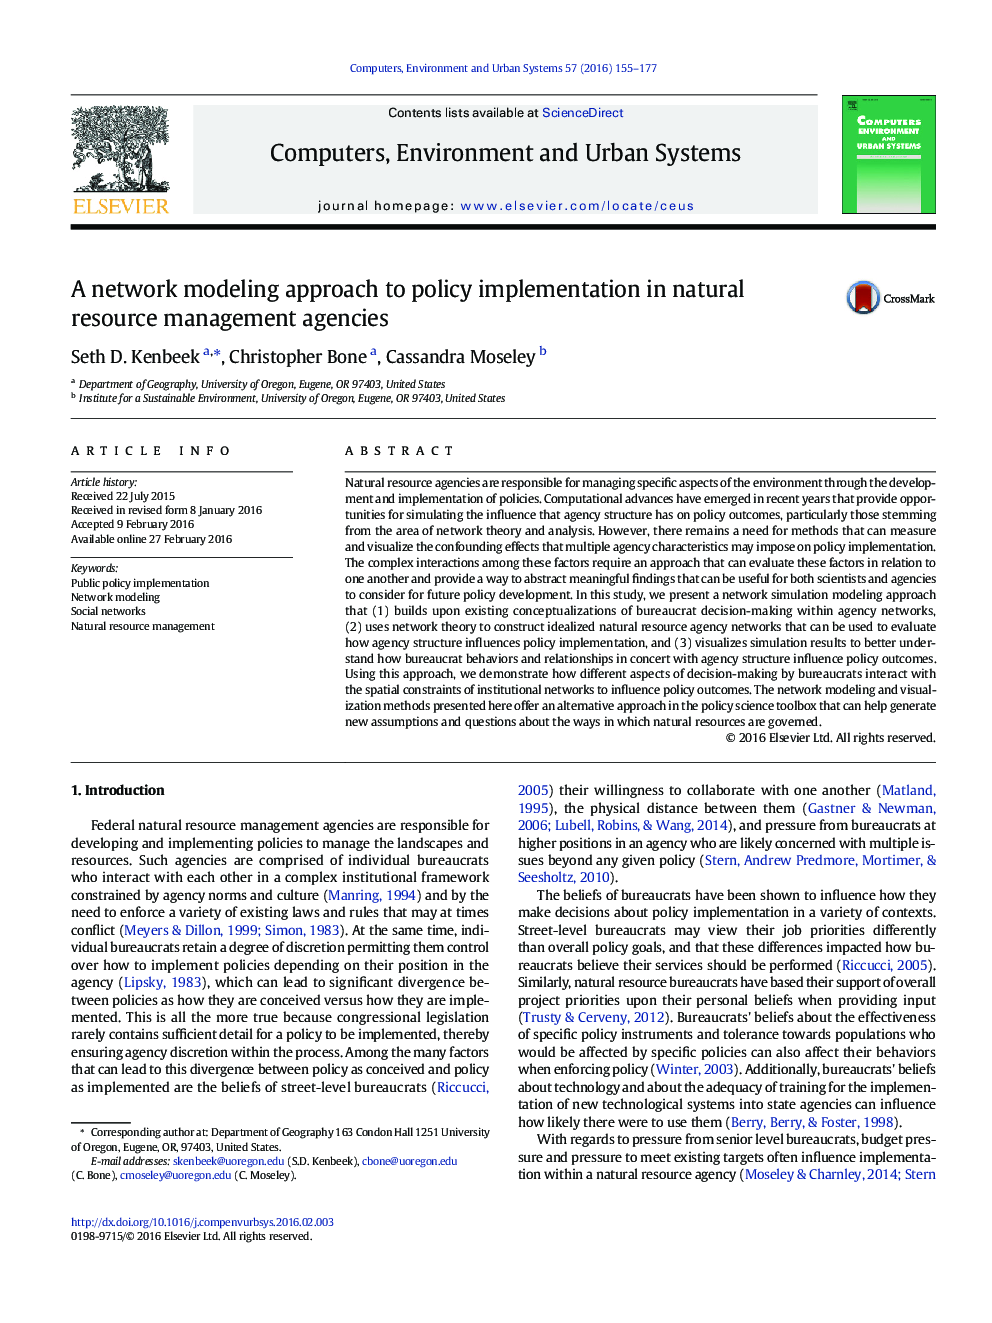 رویکرد مدل سازی شبکه به اجرای سیاست در سازمان های مدیریت منابع طبیعی 